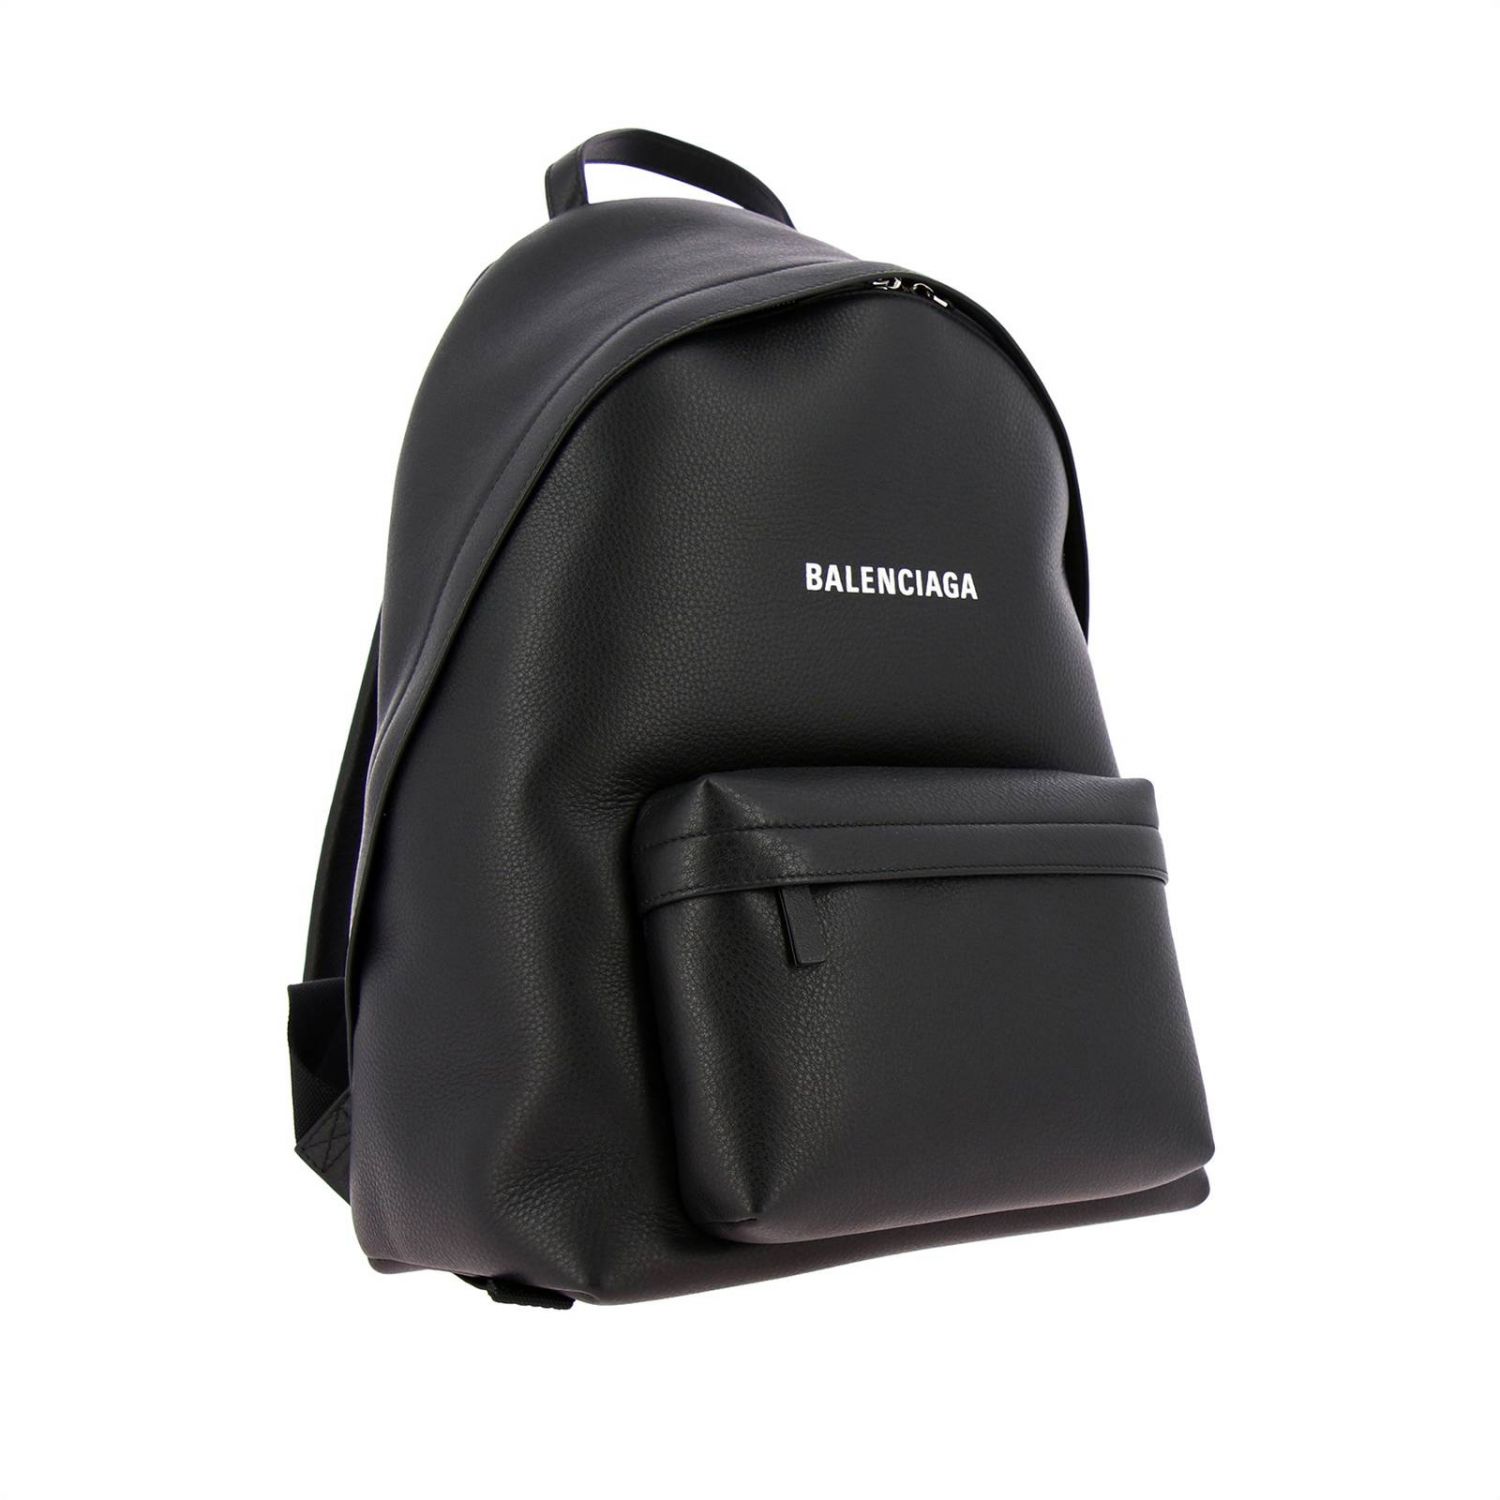 BALENCIAGA: Everyday backpack in leather with logo - Black | Balenciaga ...